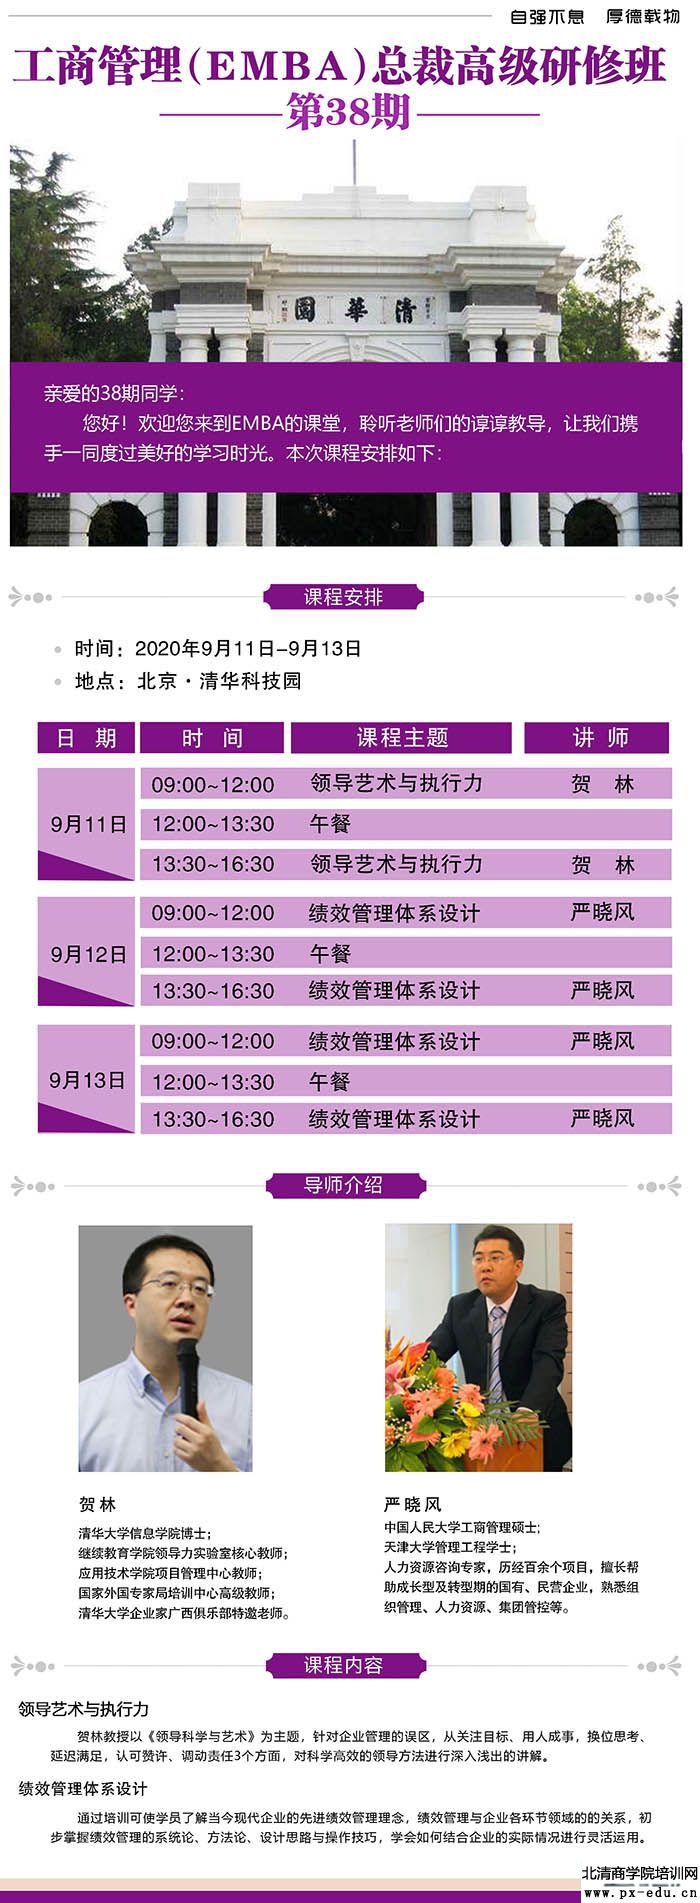 9月11-13日清大EMBA-工商管理总裁班清华科技园开课